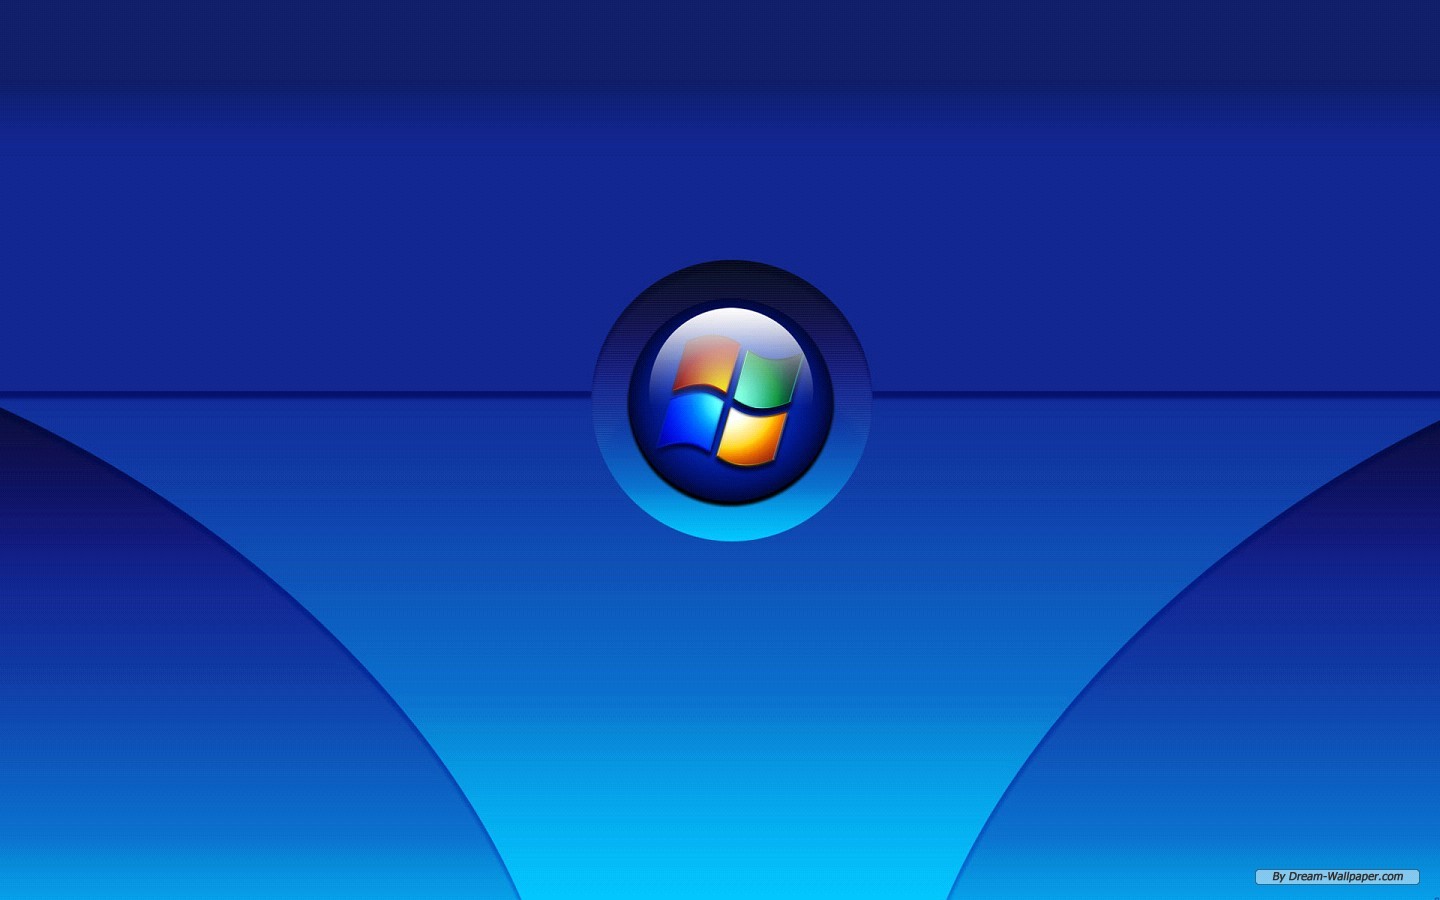 Art Wallpaper Windows Vista Episode